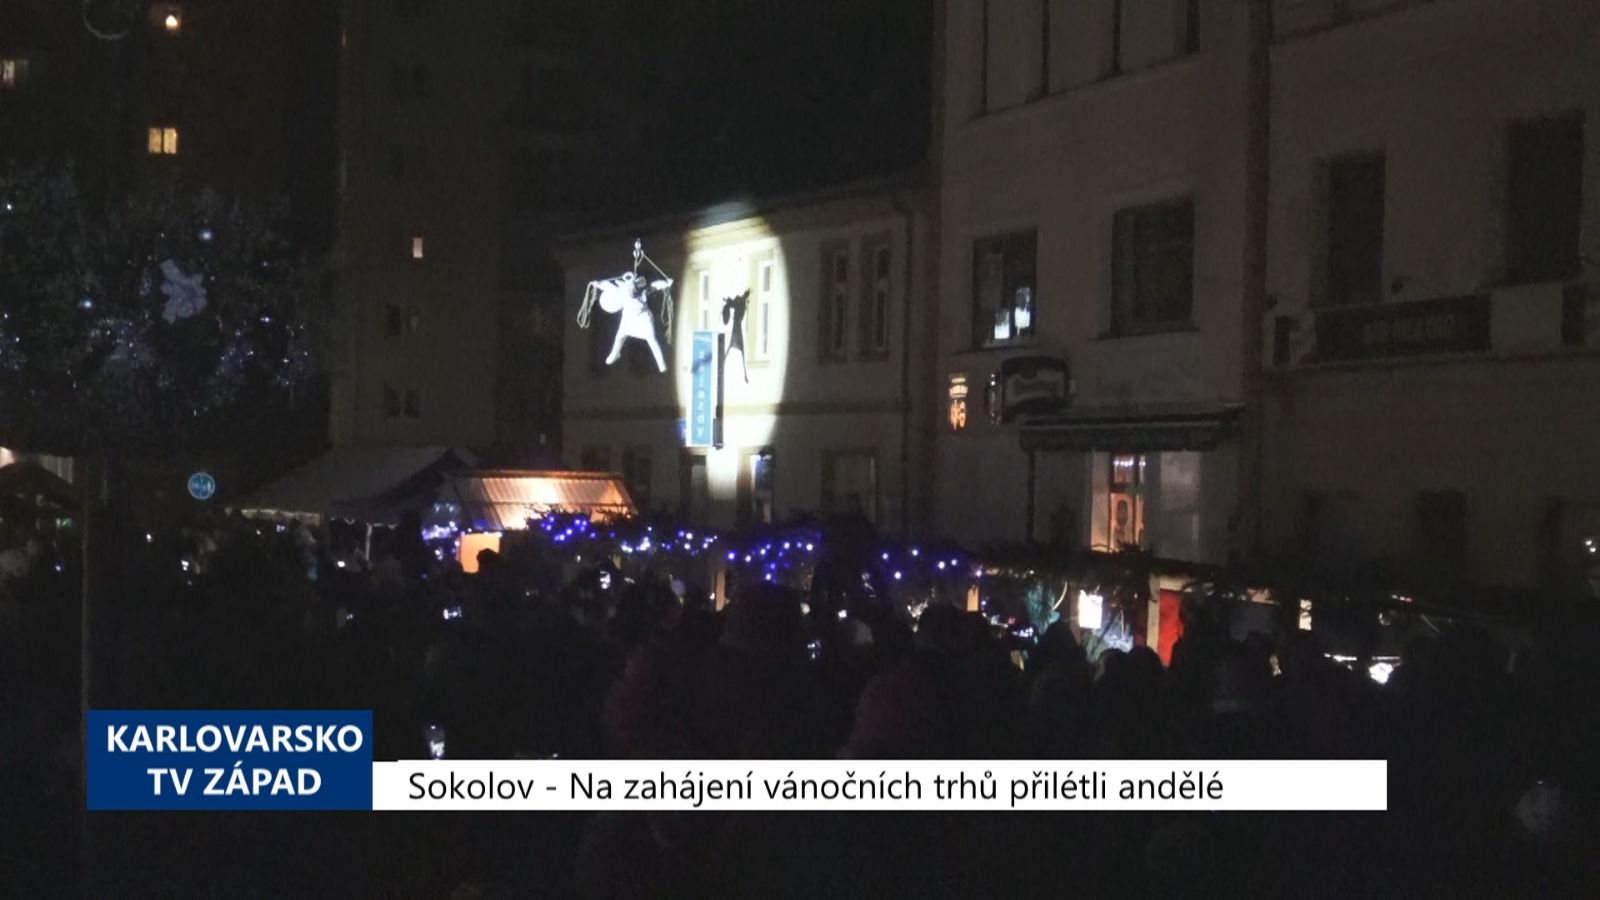 Sokolov: Na zahájení vánočních trhů přilétli andělé (TV Západ)